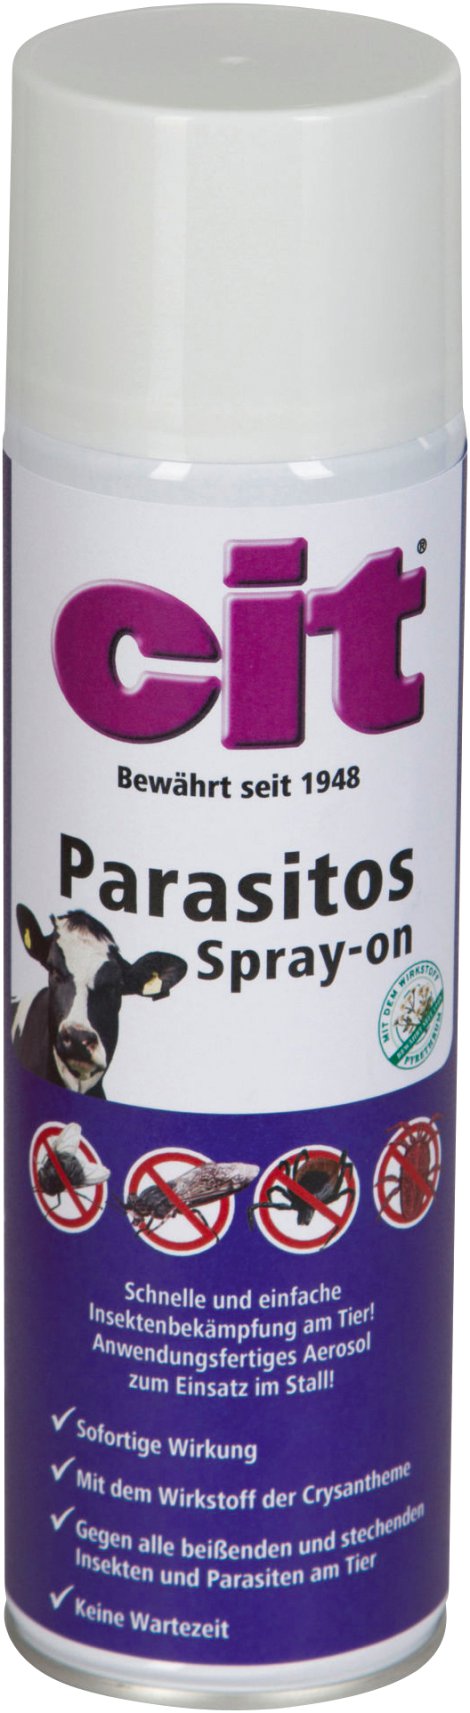 CIT Parasitos Spray-on 500 ml